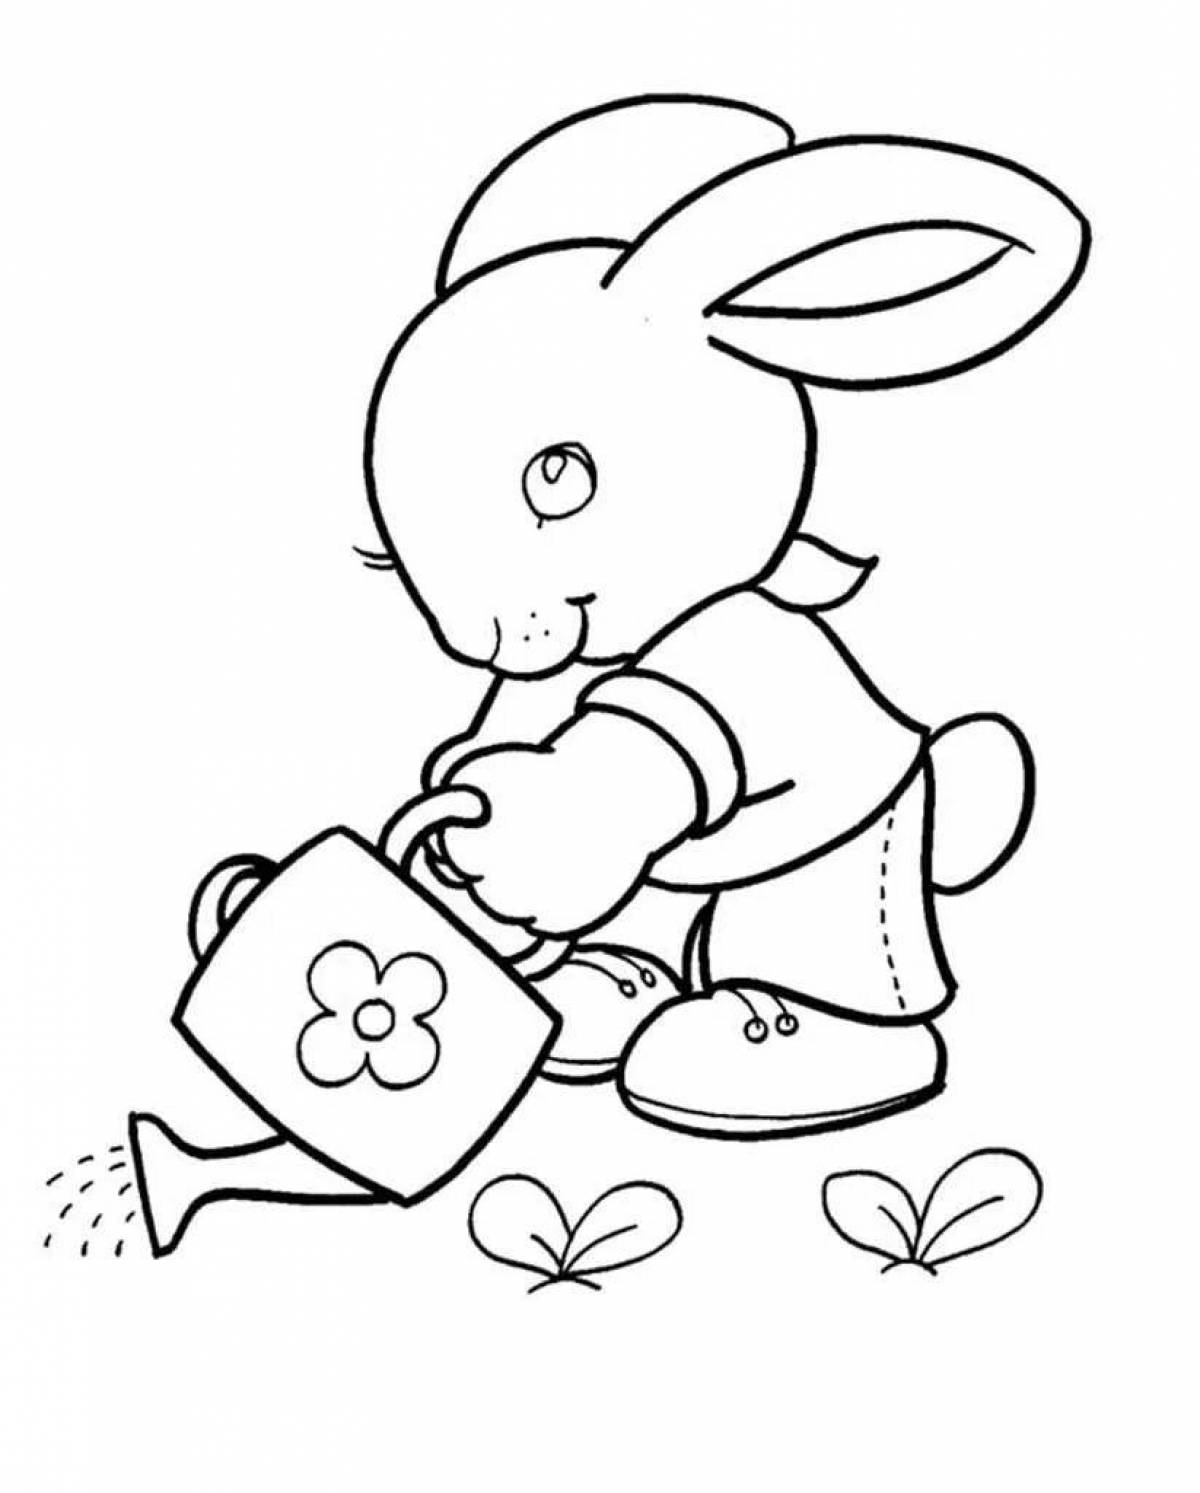 Веселая раскраска кролик для детей 2 лет